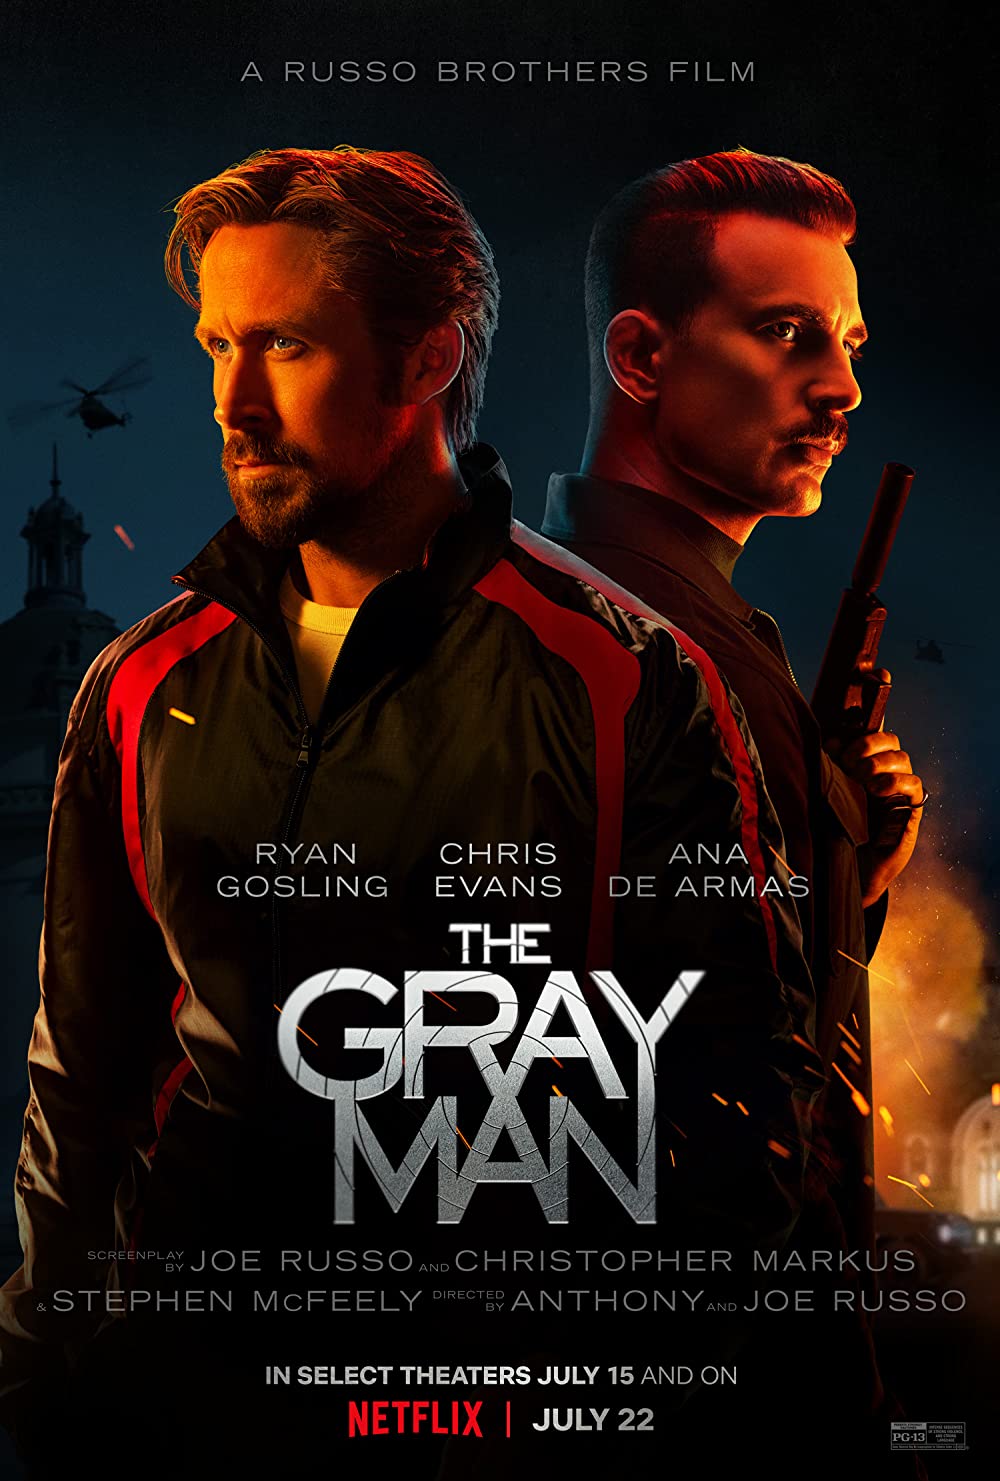 Filmbeschreibung zu The Gray Man